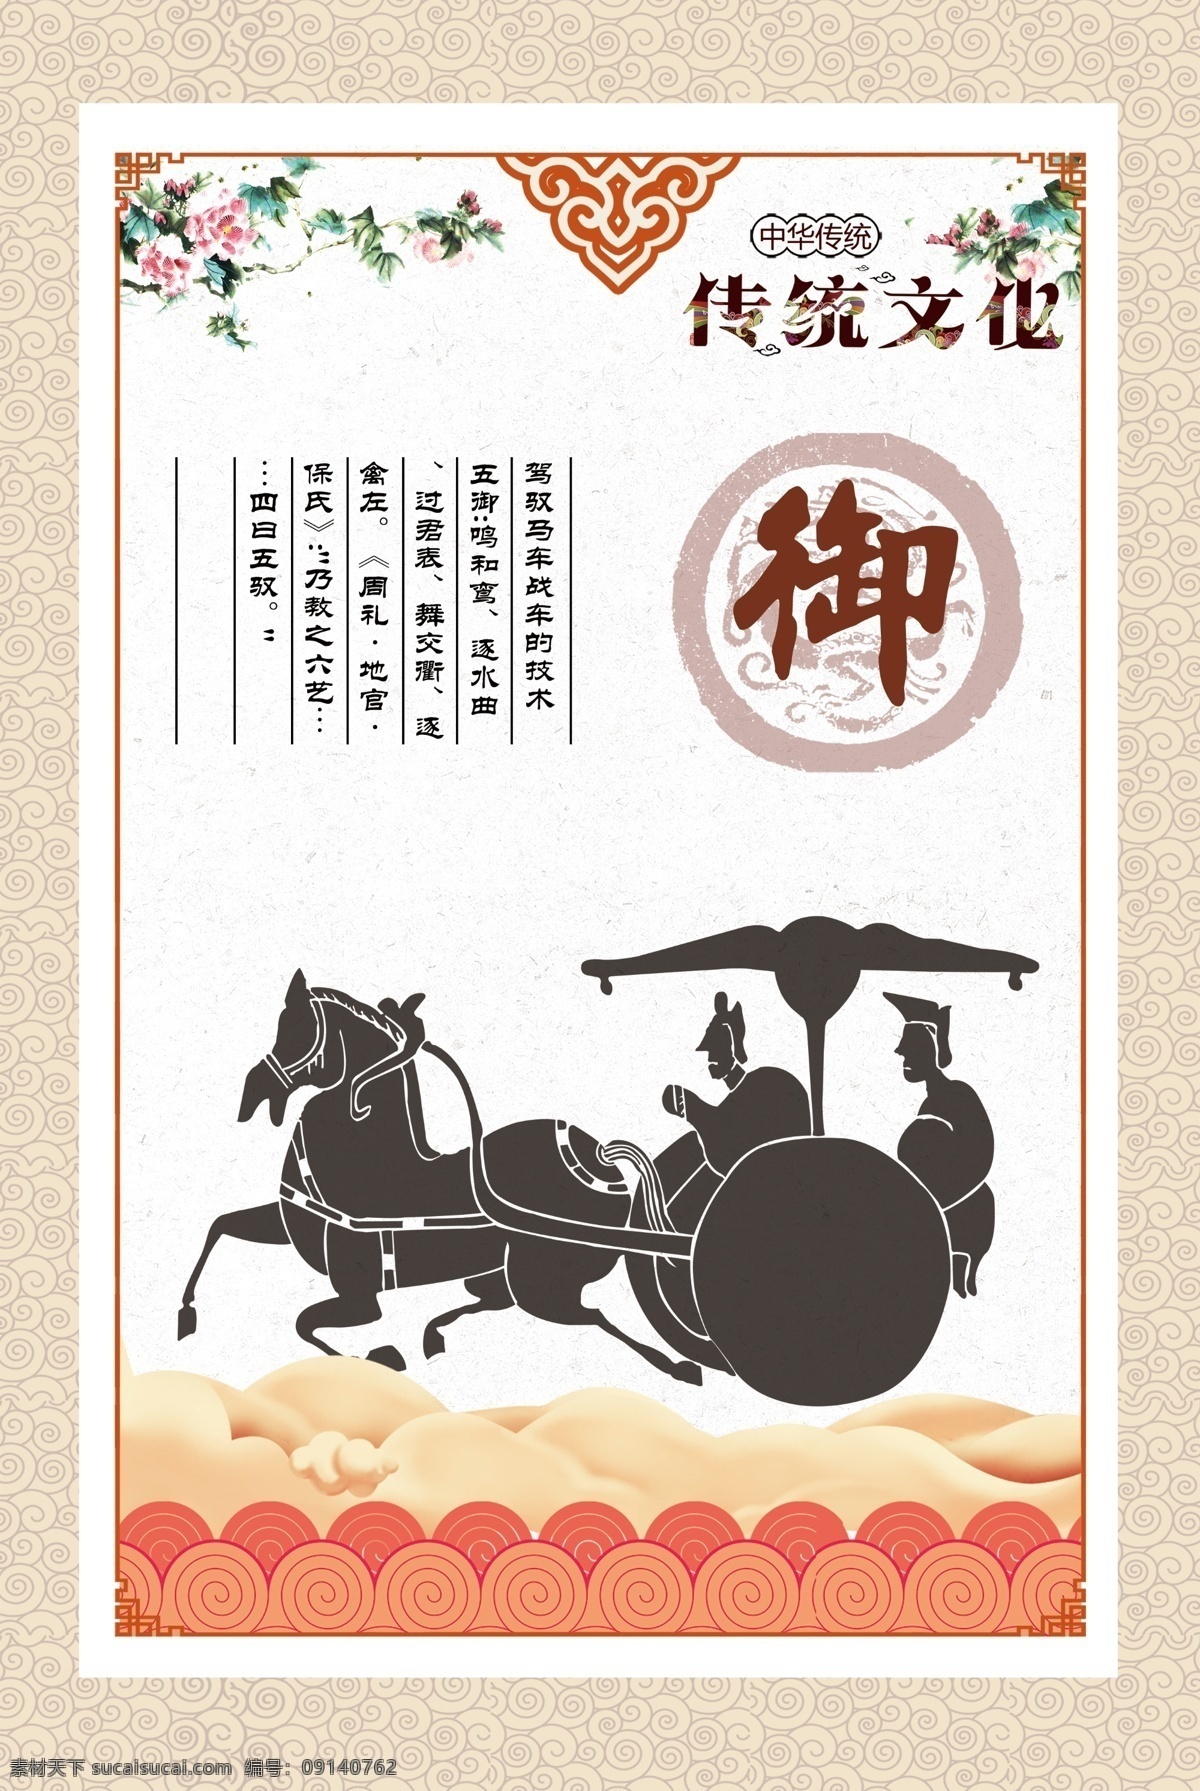 六艺之御 传统文化 六艺 御 图像 解释 分层 祥云 古典 马车 牡丹 展板 龙纹